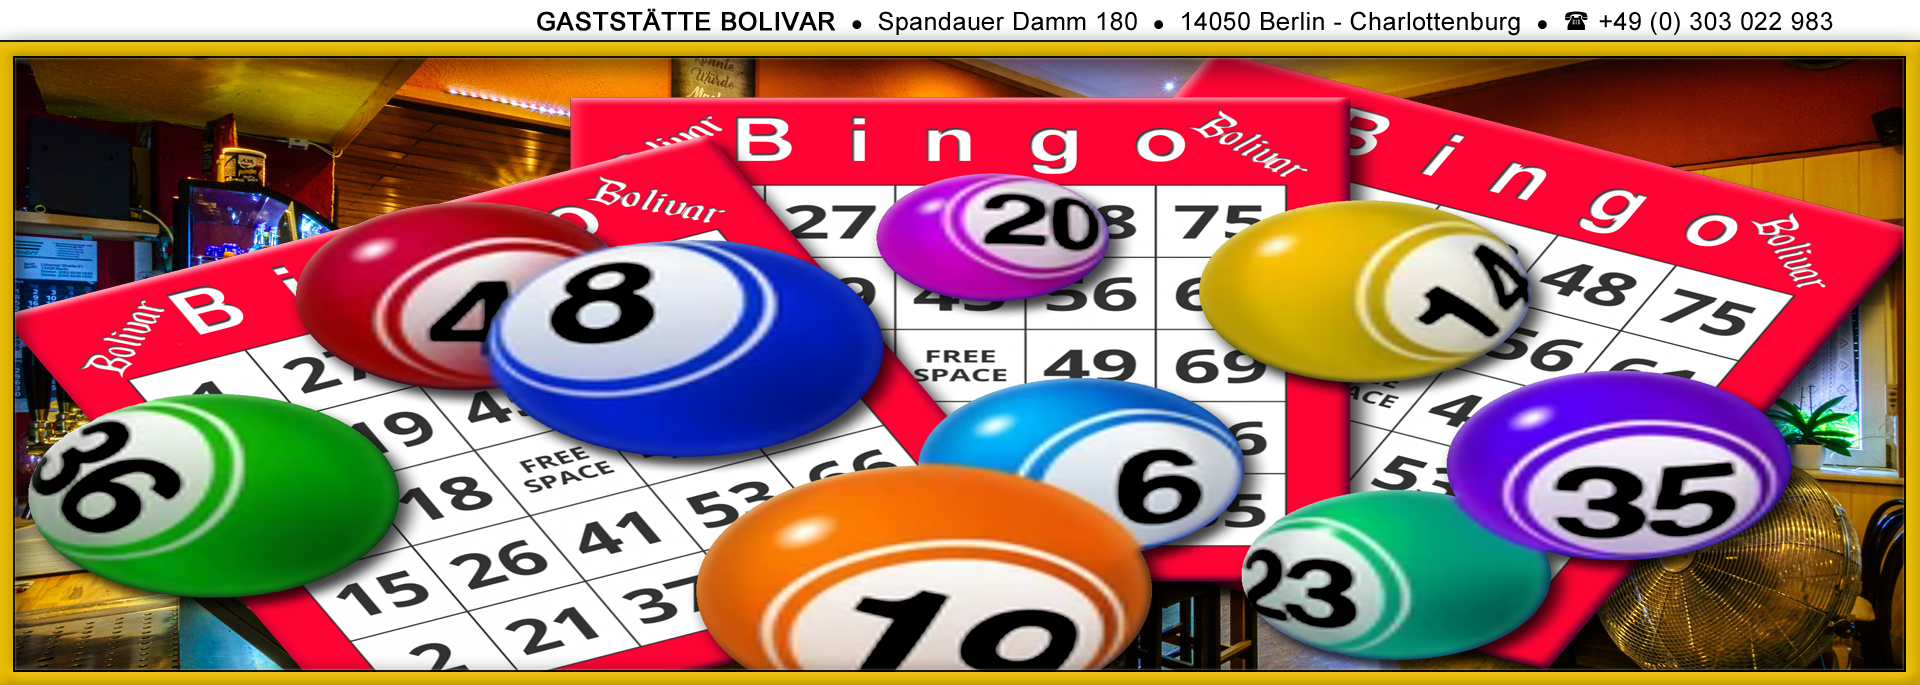 Bingo spielen in Berlin, Charlottenburg-Wilmersdorf, im Kiez vom Westend, im Bolivar, mit Imbiss, Spaß und Spannung